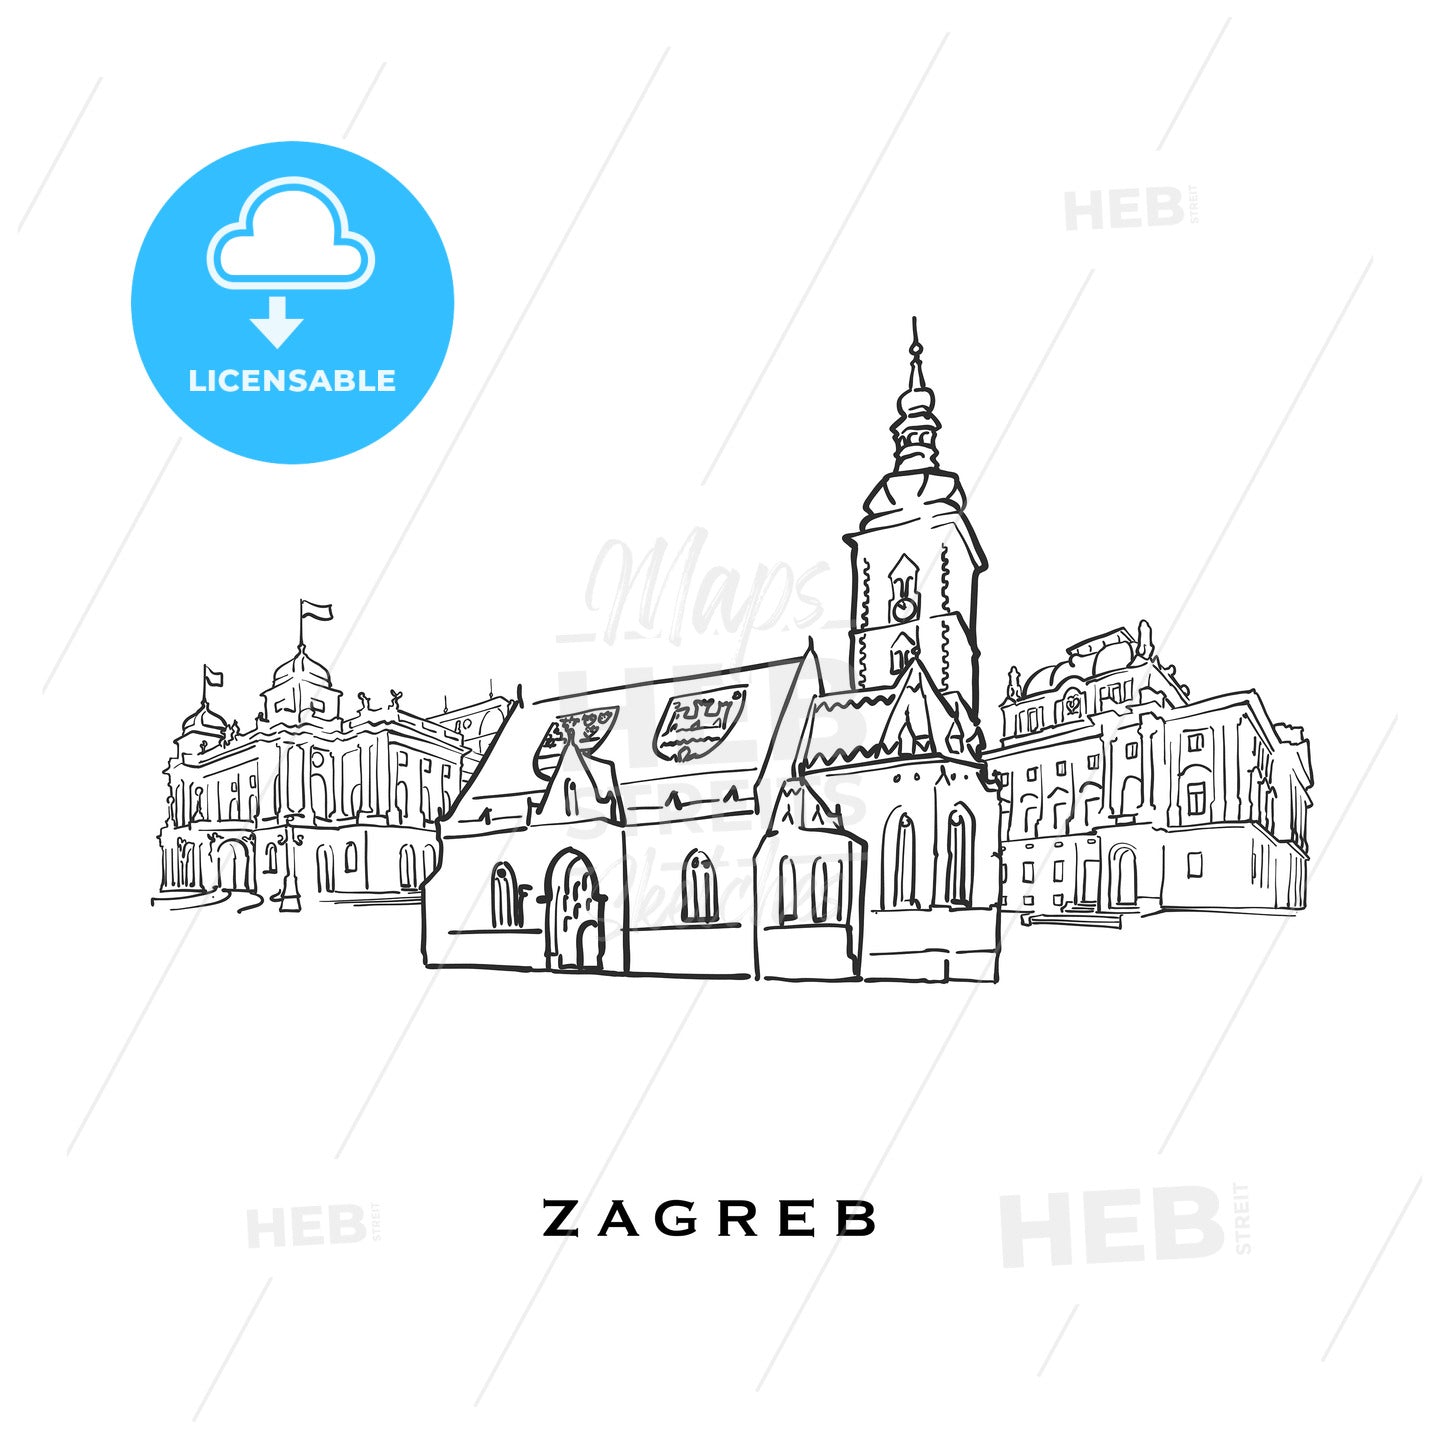 Zagreb Croatia famous architecture – instant download